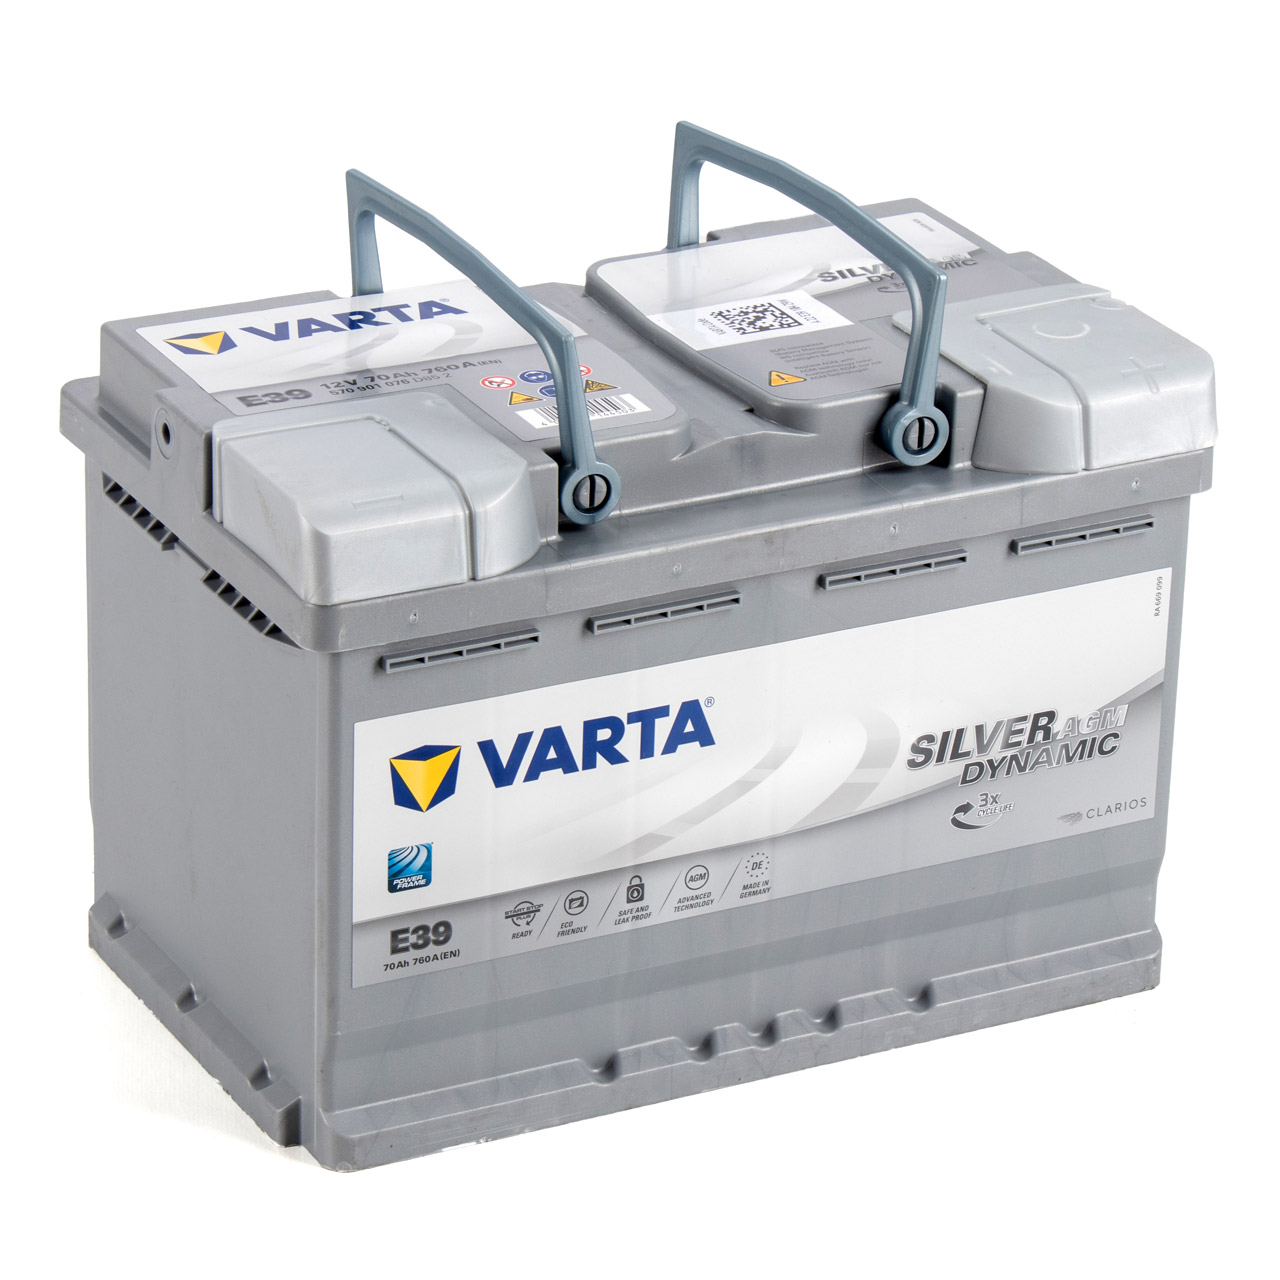 VARTA Starterbatterien / Autobatterien - 570901076D852 